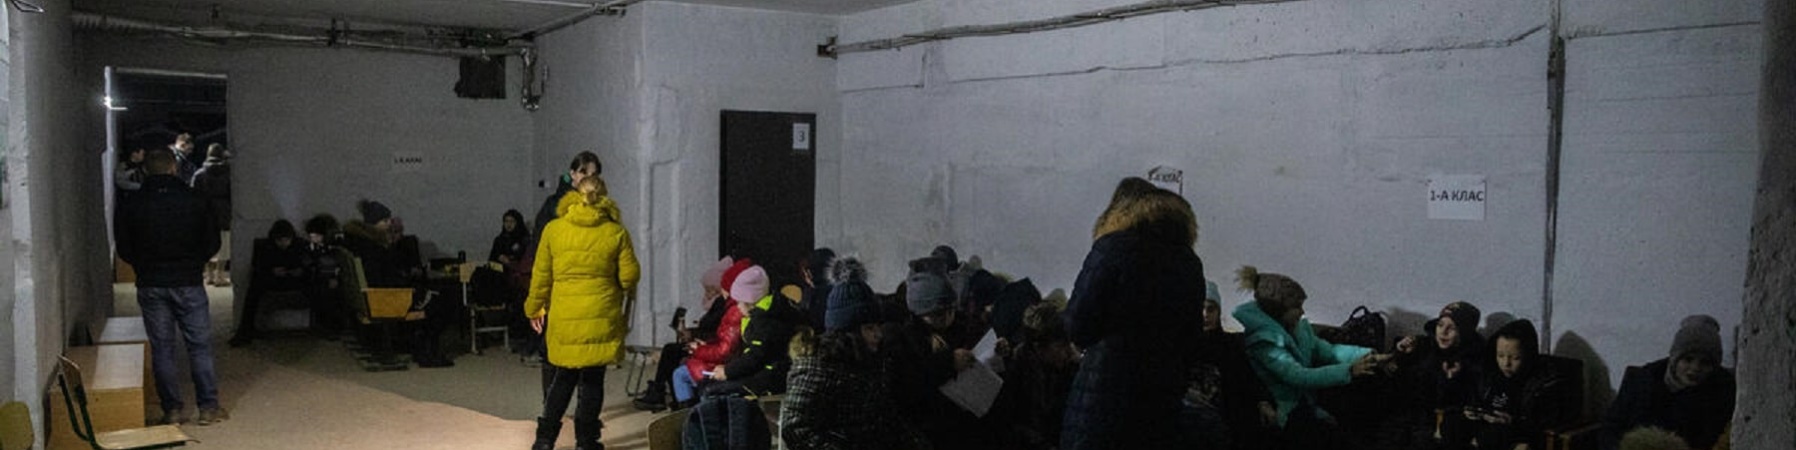 Bambini rifugiati in un bunker in Ucraina